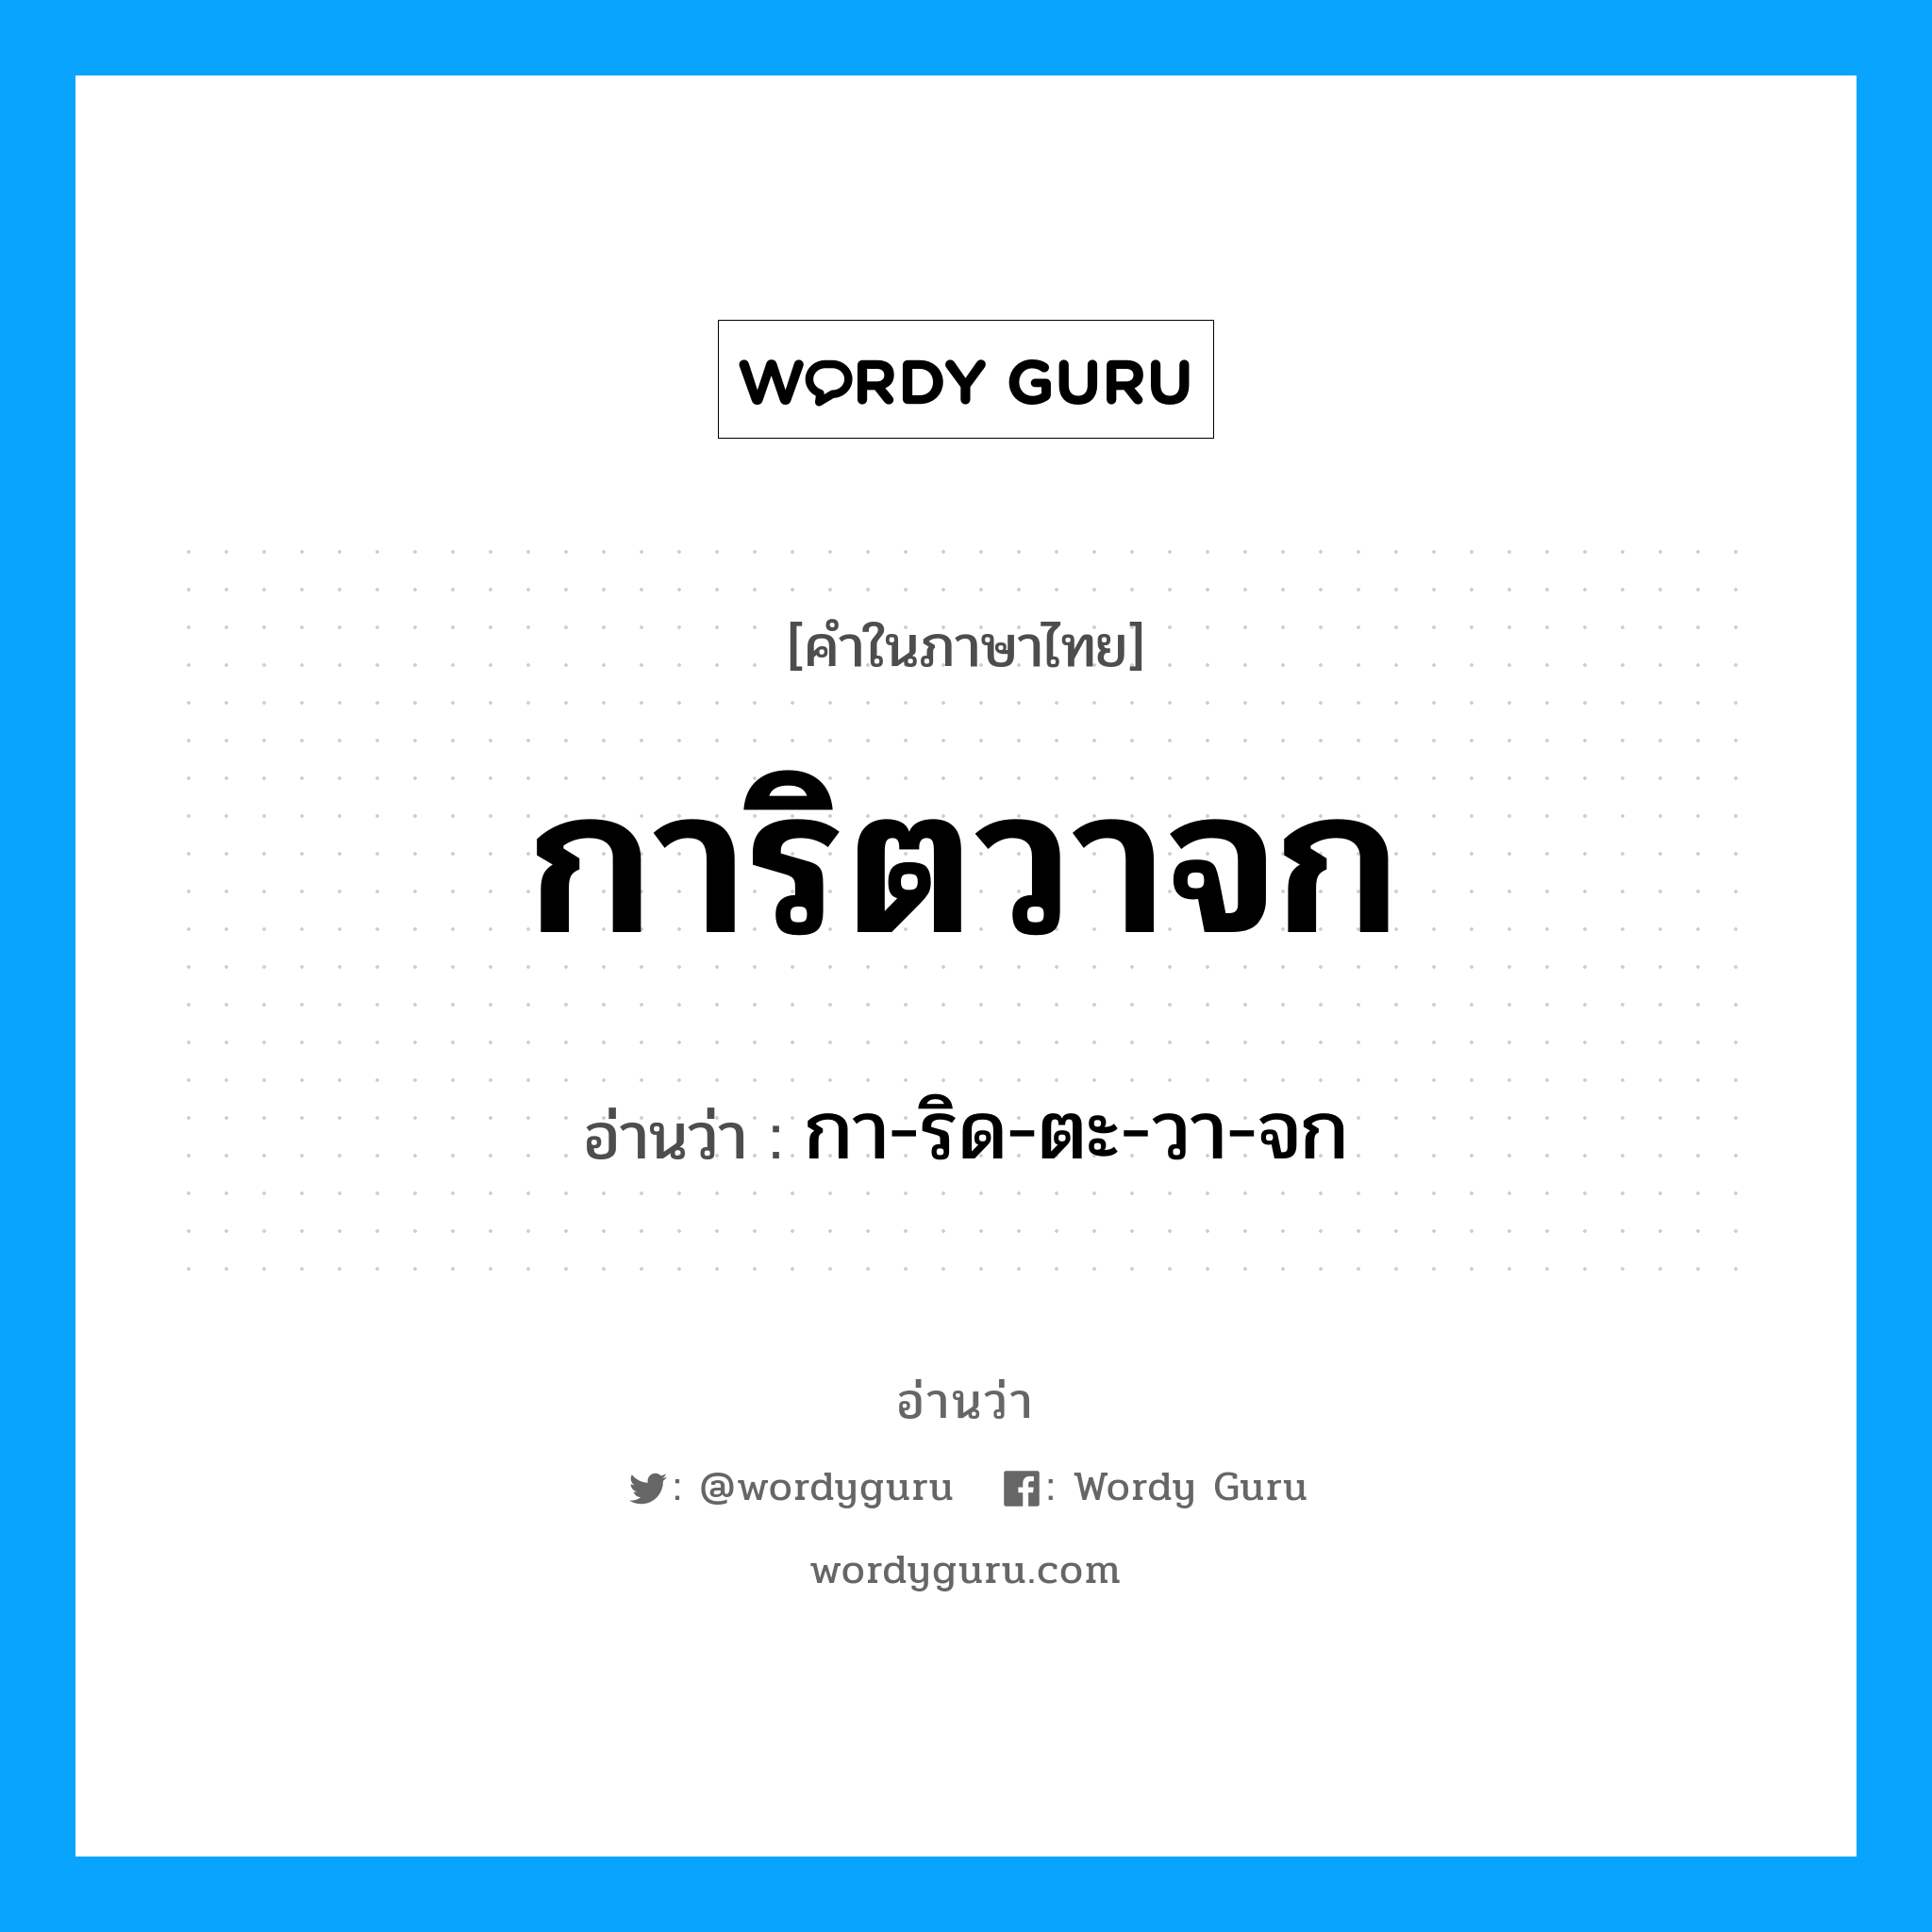 กา-ริด-ตะ-วา-จก เป็นคำอ่านของคำไหน?, คำในภาษาไทย กา-ริด-ตะ-วา-จก อ่านว่า การิตวาจก